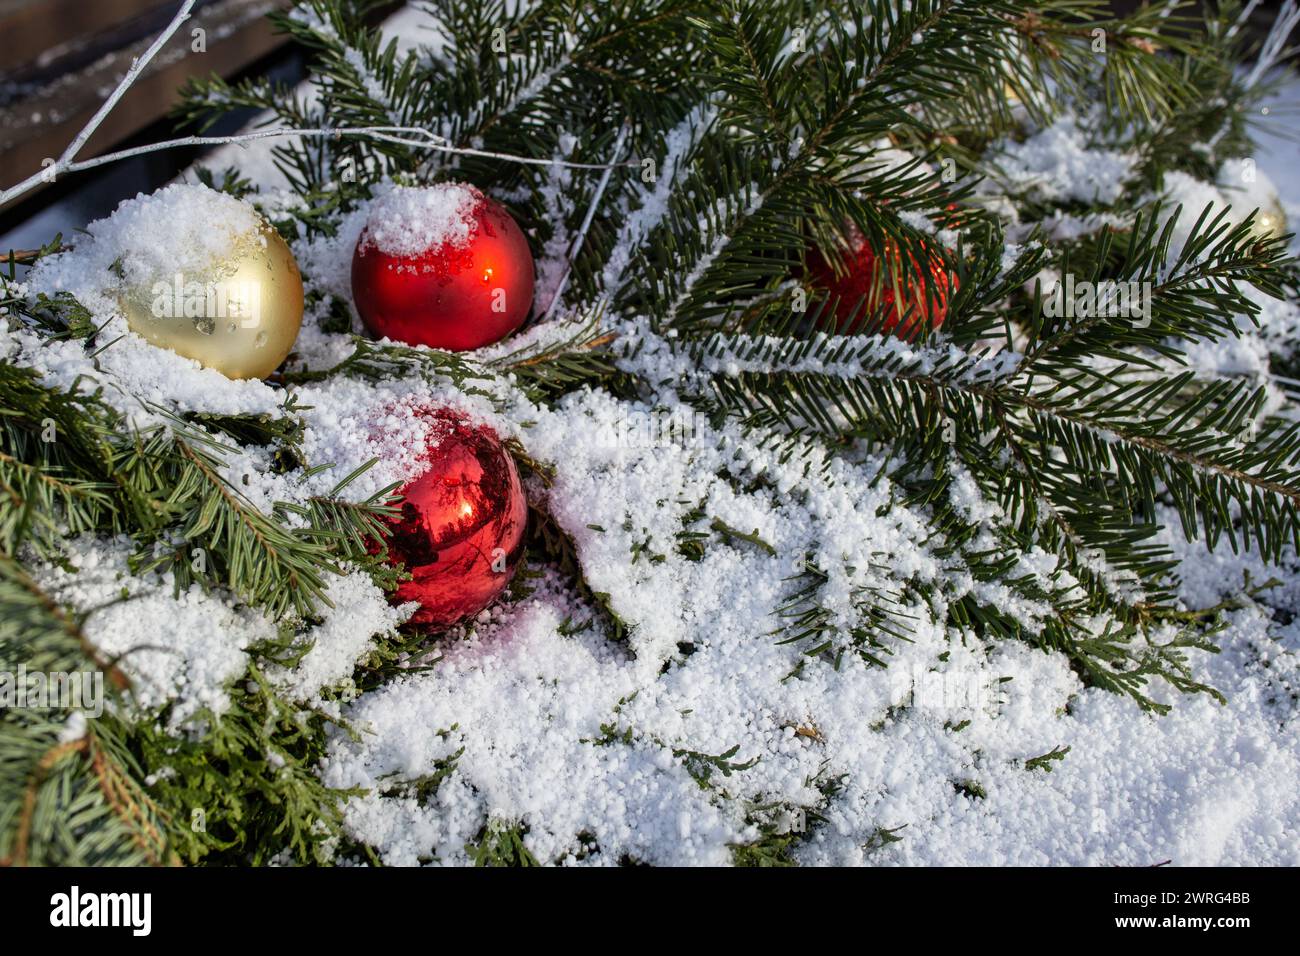 Baubles rosso dell'albero di natale con rami di abete e vera neve su tavole di legno Foto Stock